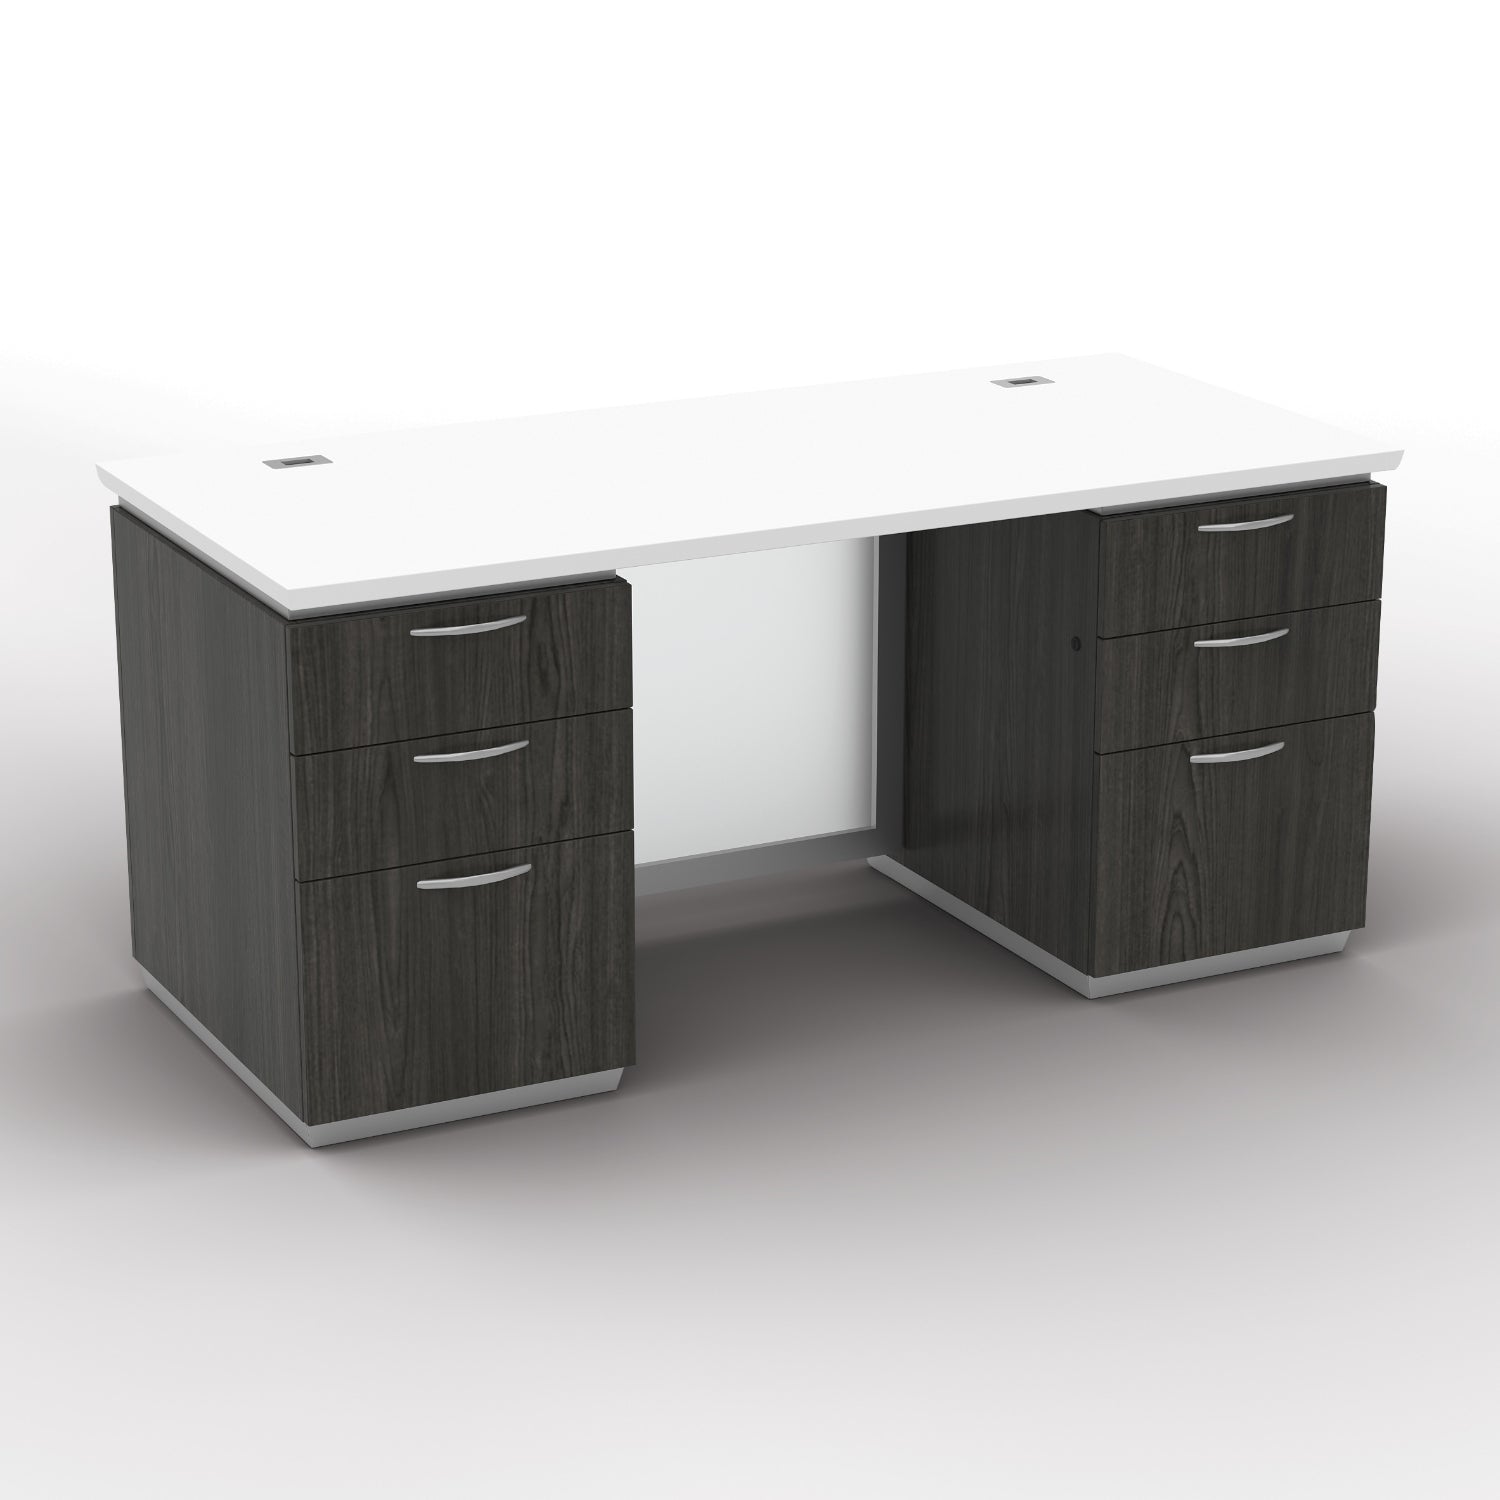 "Tuxedo White" Double Pedestal Desk, 66" x 30", White Top with Slate Grey Base